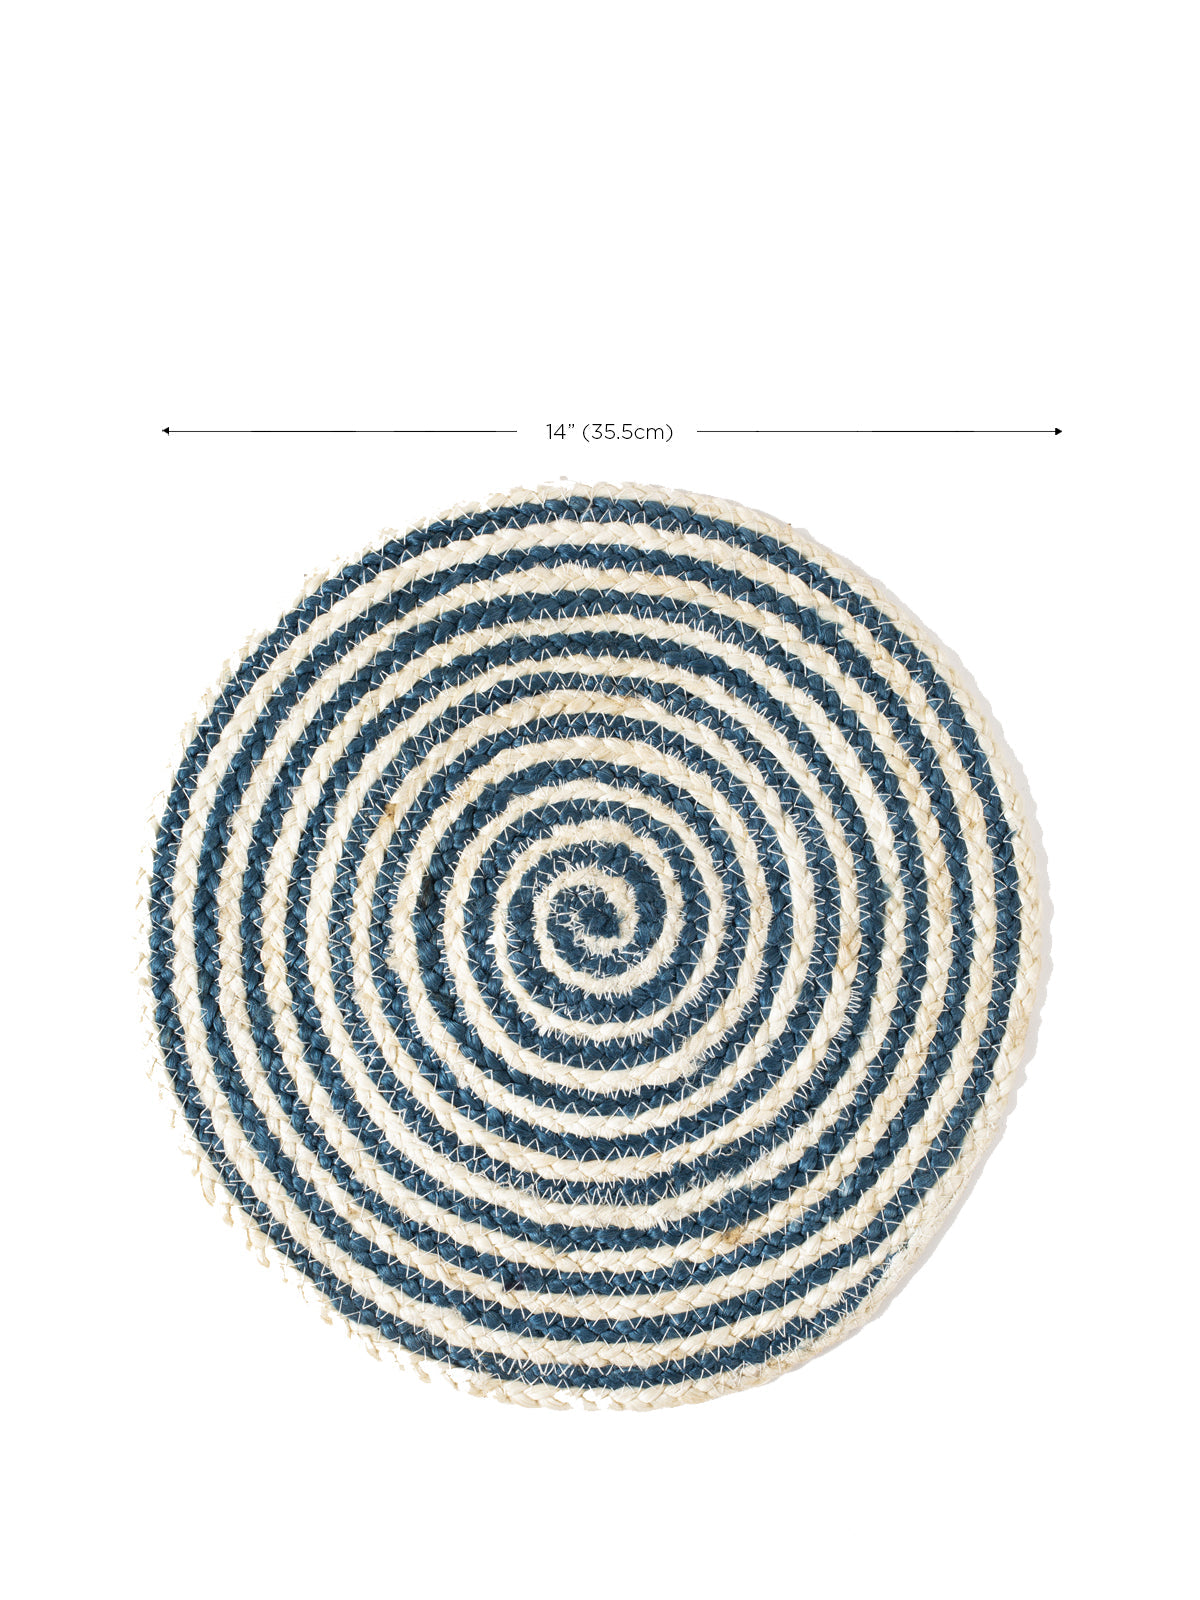  Kata Spiral Placemat - Blue (Set of 4) by KORISSA KORISSA Perfumarie